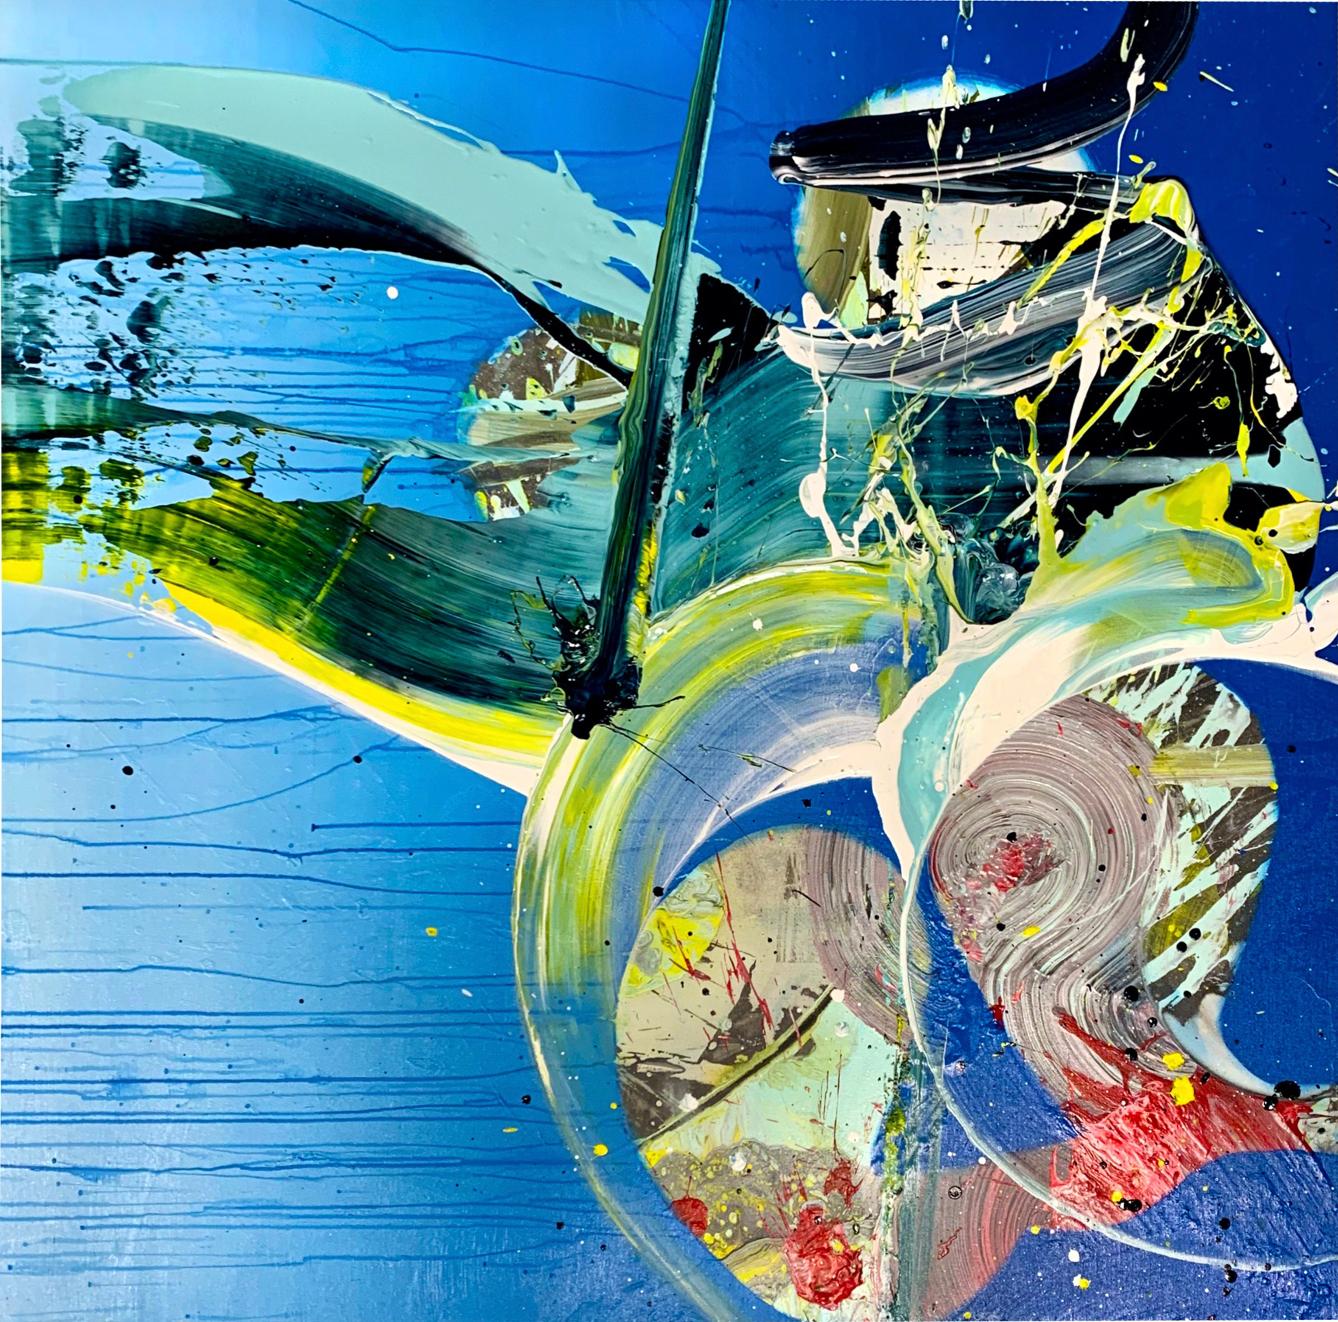 Night Swim, farbenfroher abstrakter Expressionismus, großes zeitgenössisches Acryl auf Leinwand – Mixed Media Art von Chuck Hipsher 